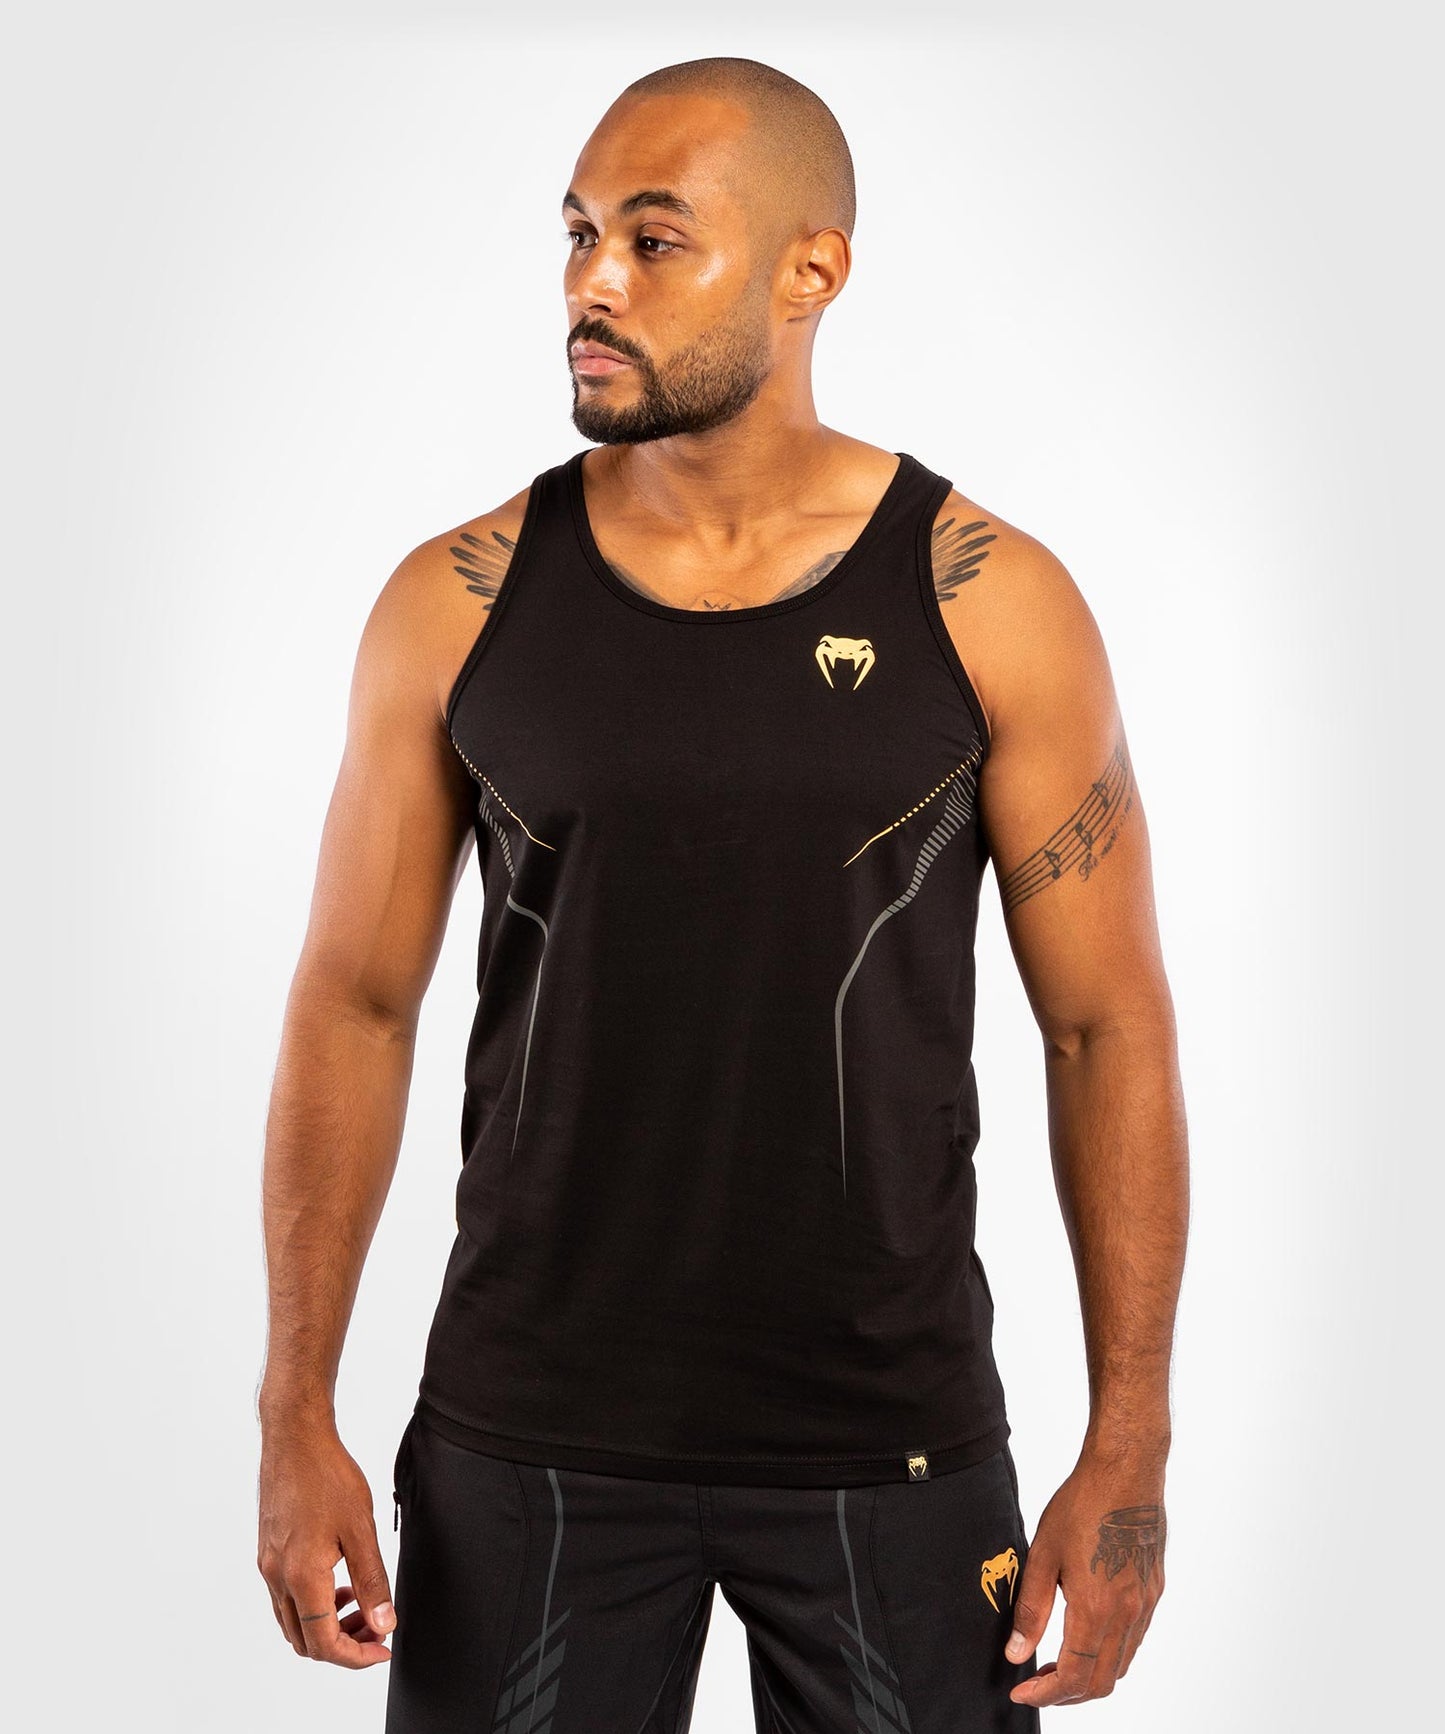 Camiseta sin mangas Venum Athletics - Negro/Dorado